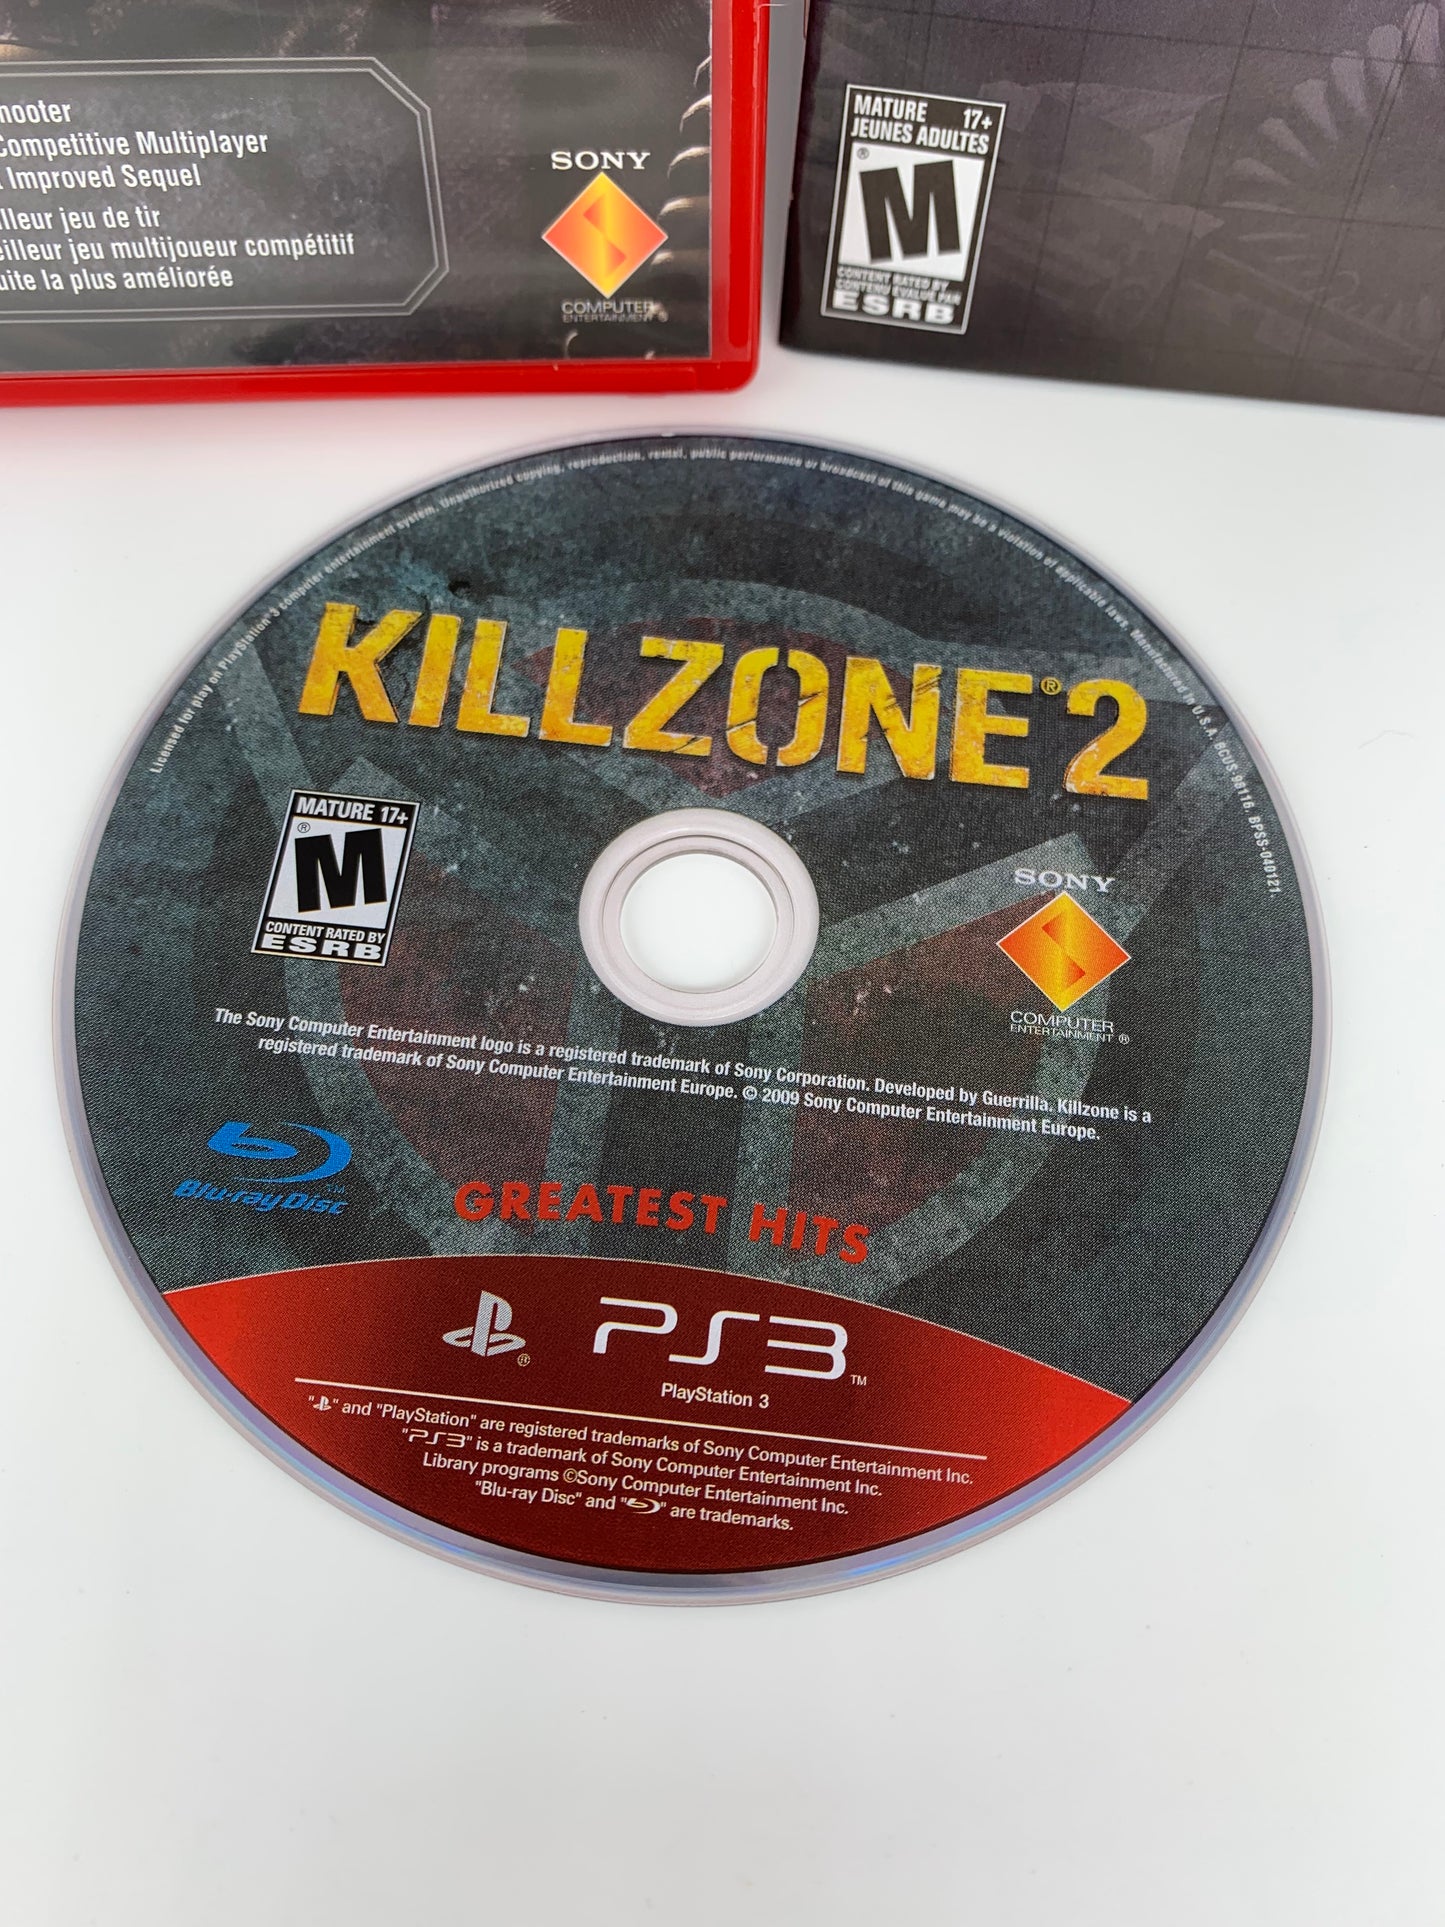 SONY PLAYSTATiON 3 [PS3] | KiLLZONE 2 | GREATEST HiTS